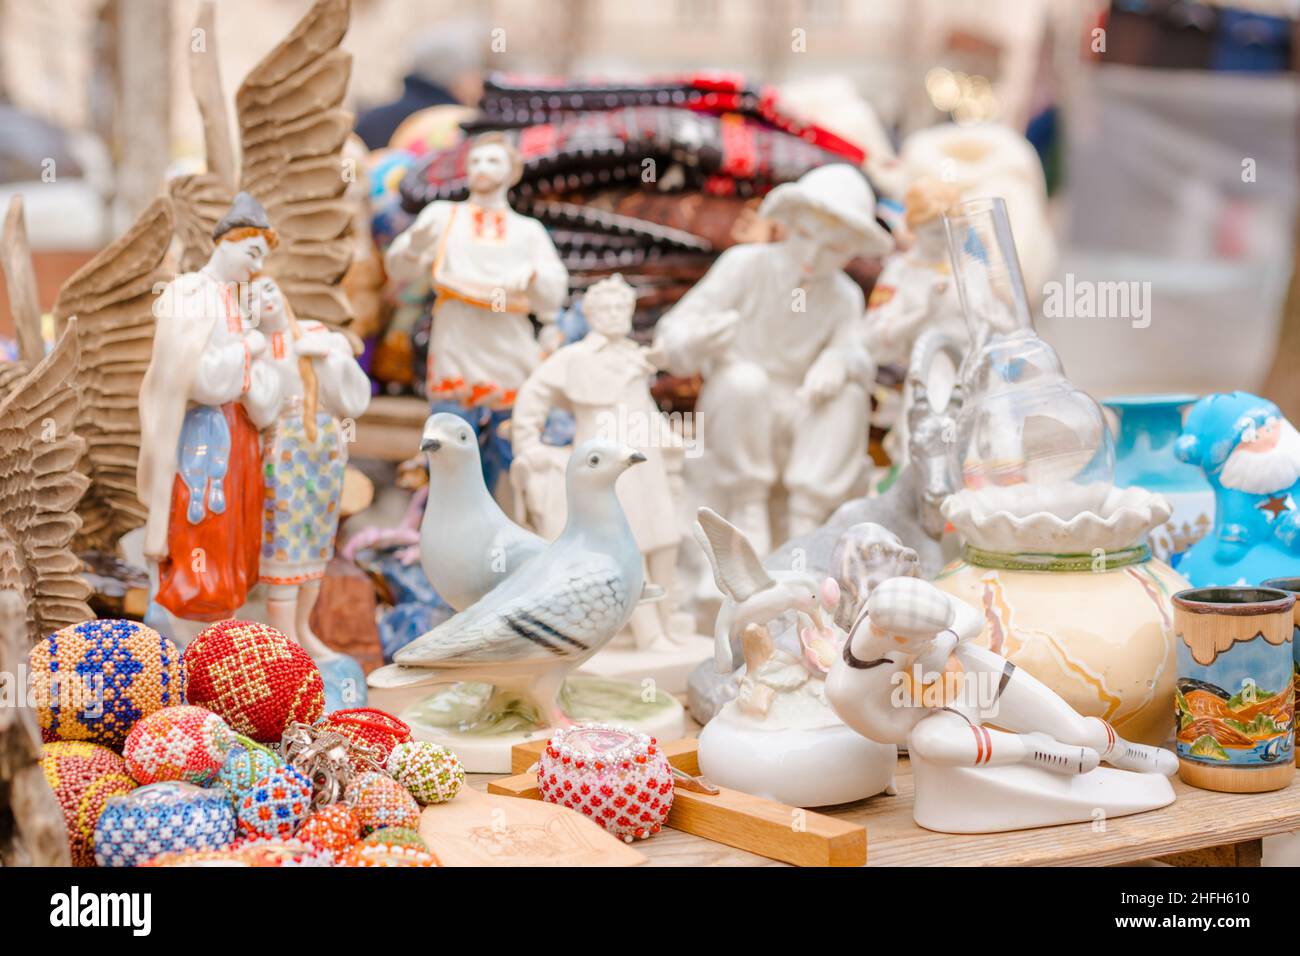 Lviv, Ucraina - 08.01.2022 : figurine di porcellana d'epoca sul mercato delle pulci. Vecchie figurine sovietiche del periodo dell'urss, cimeli da collezione. Deco vintage Foto Stock